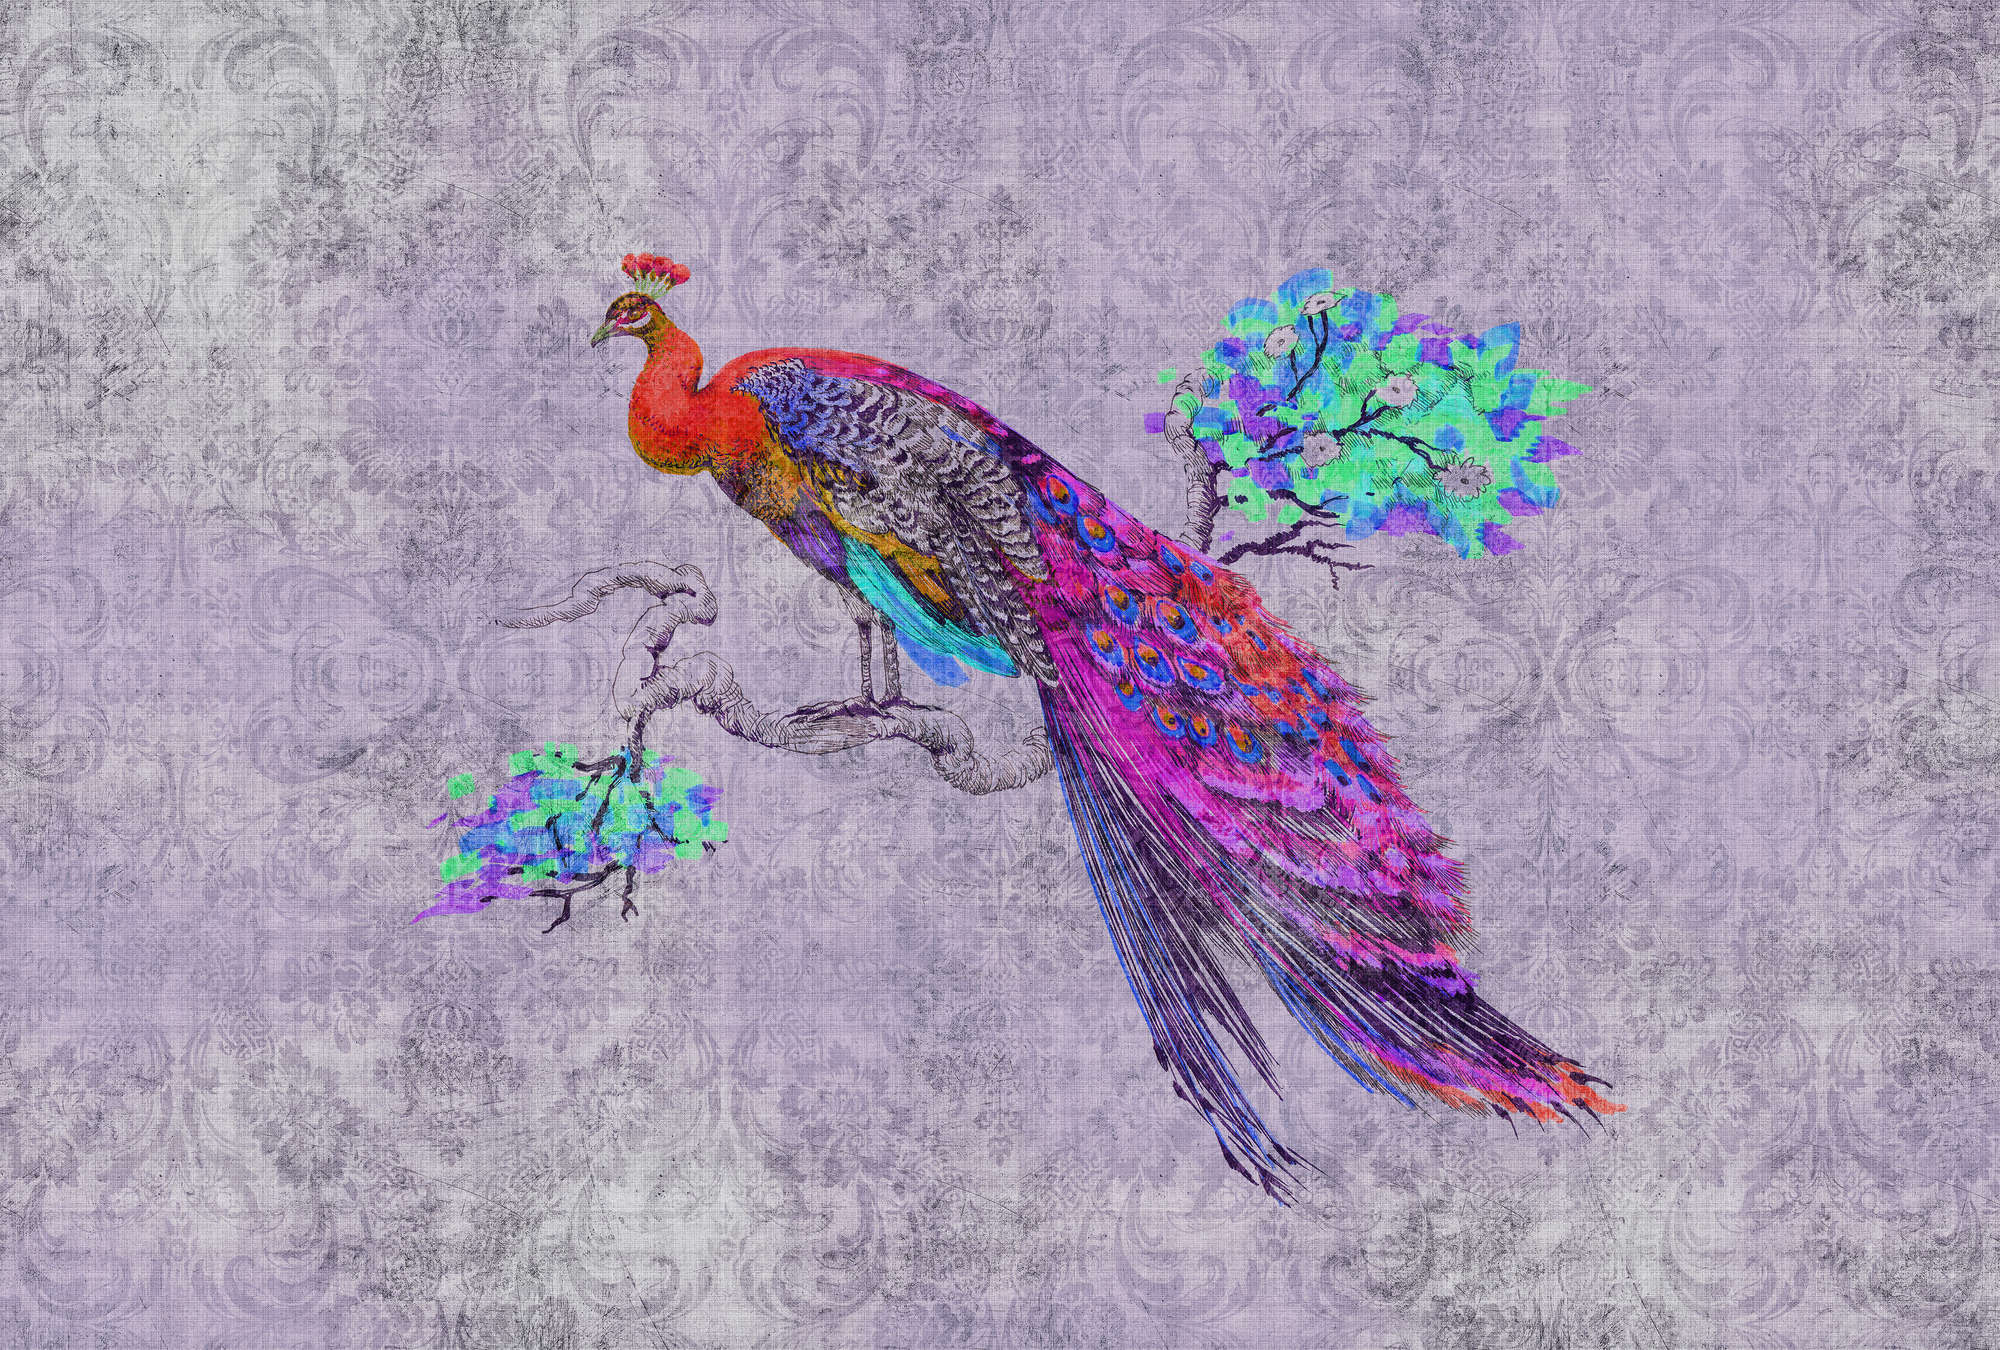             Peacock 3 - Carta da parati colorata con pavone - Natura qualita consistenza in lino naturale - Blu, rosa | Premium Smooth Fleece
        